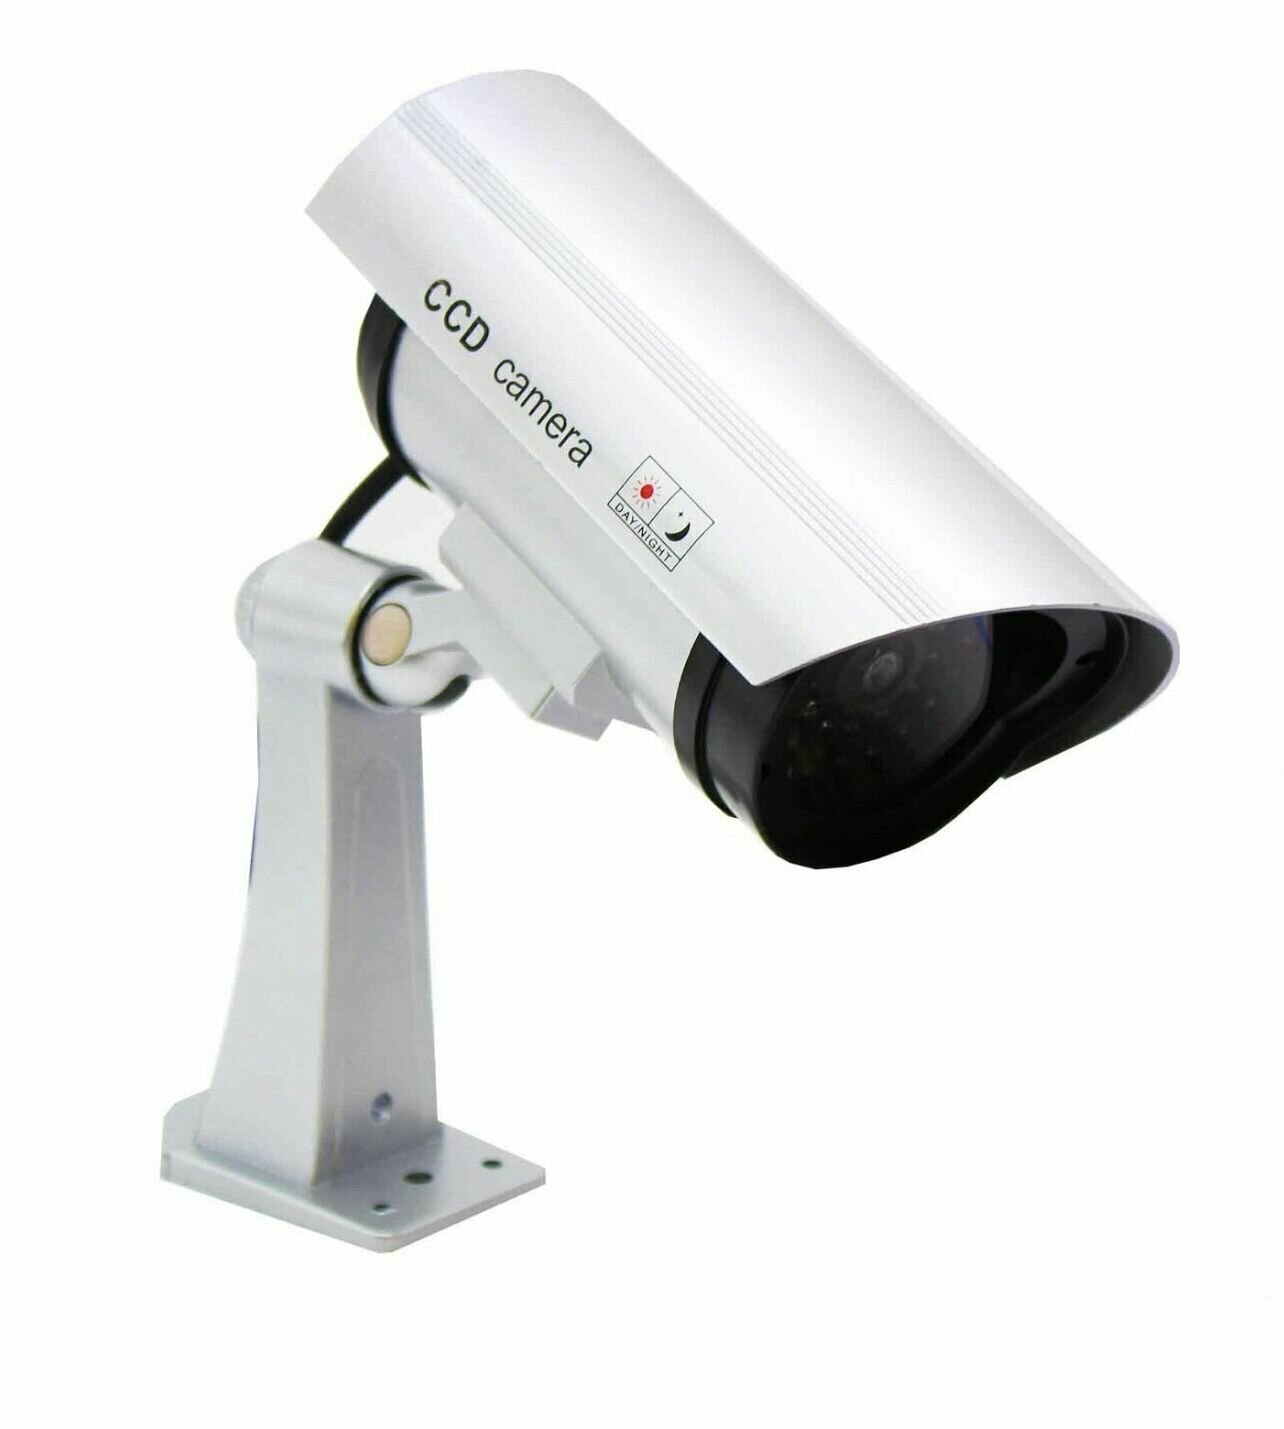 Муляж камеры видеонаблюдения с мигающим красным светом